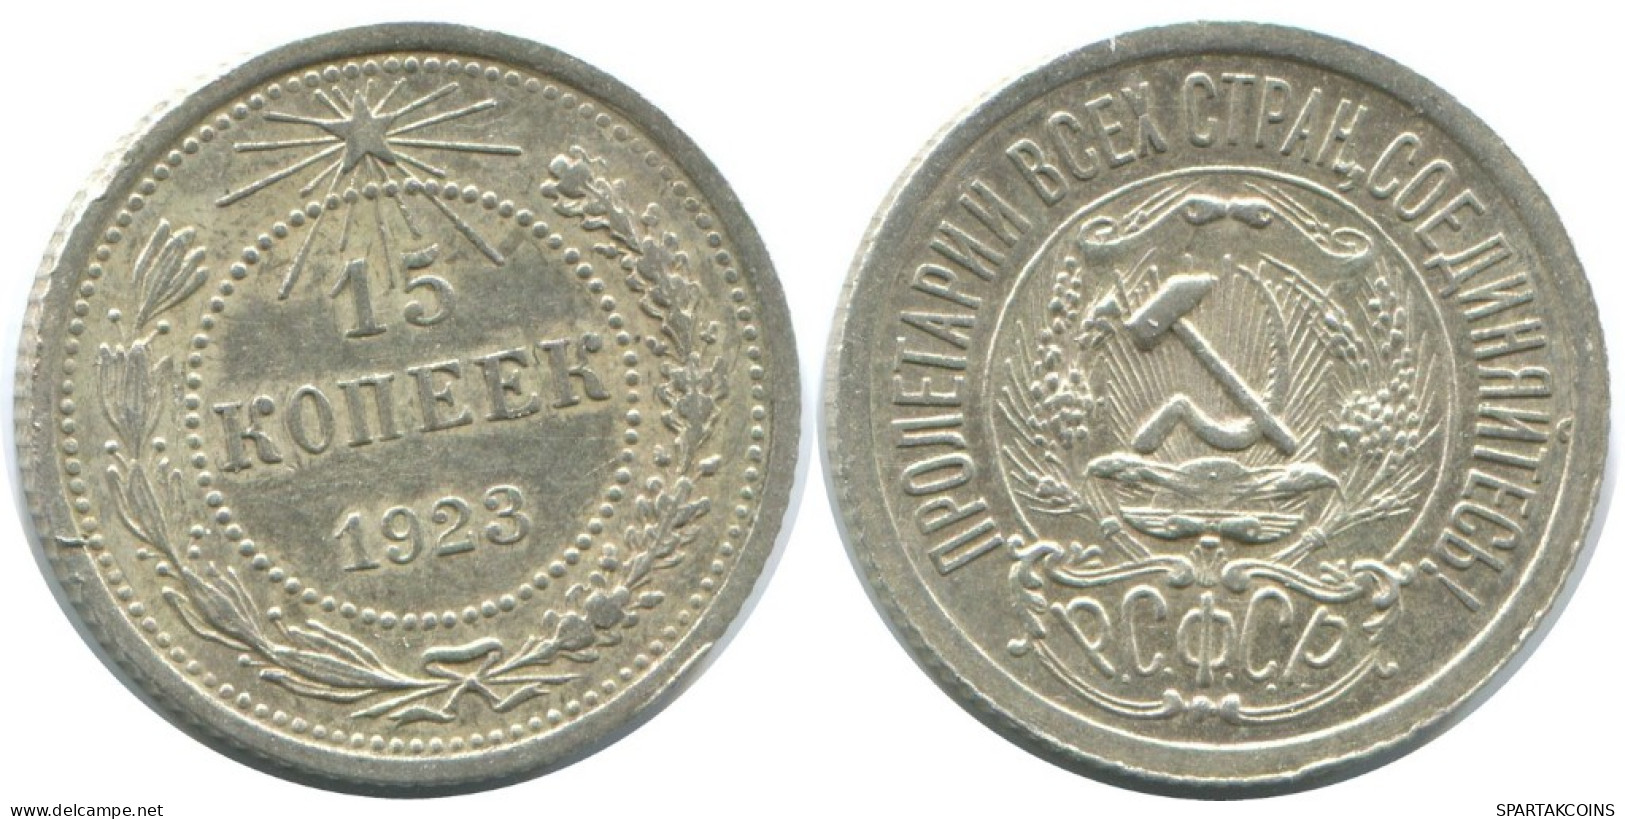 15 KOPEKS 1923 RUSSIA RSFSR SILVER Coin HIGH GRADE #AF077.4.U.A - Russland